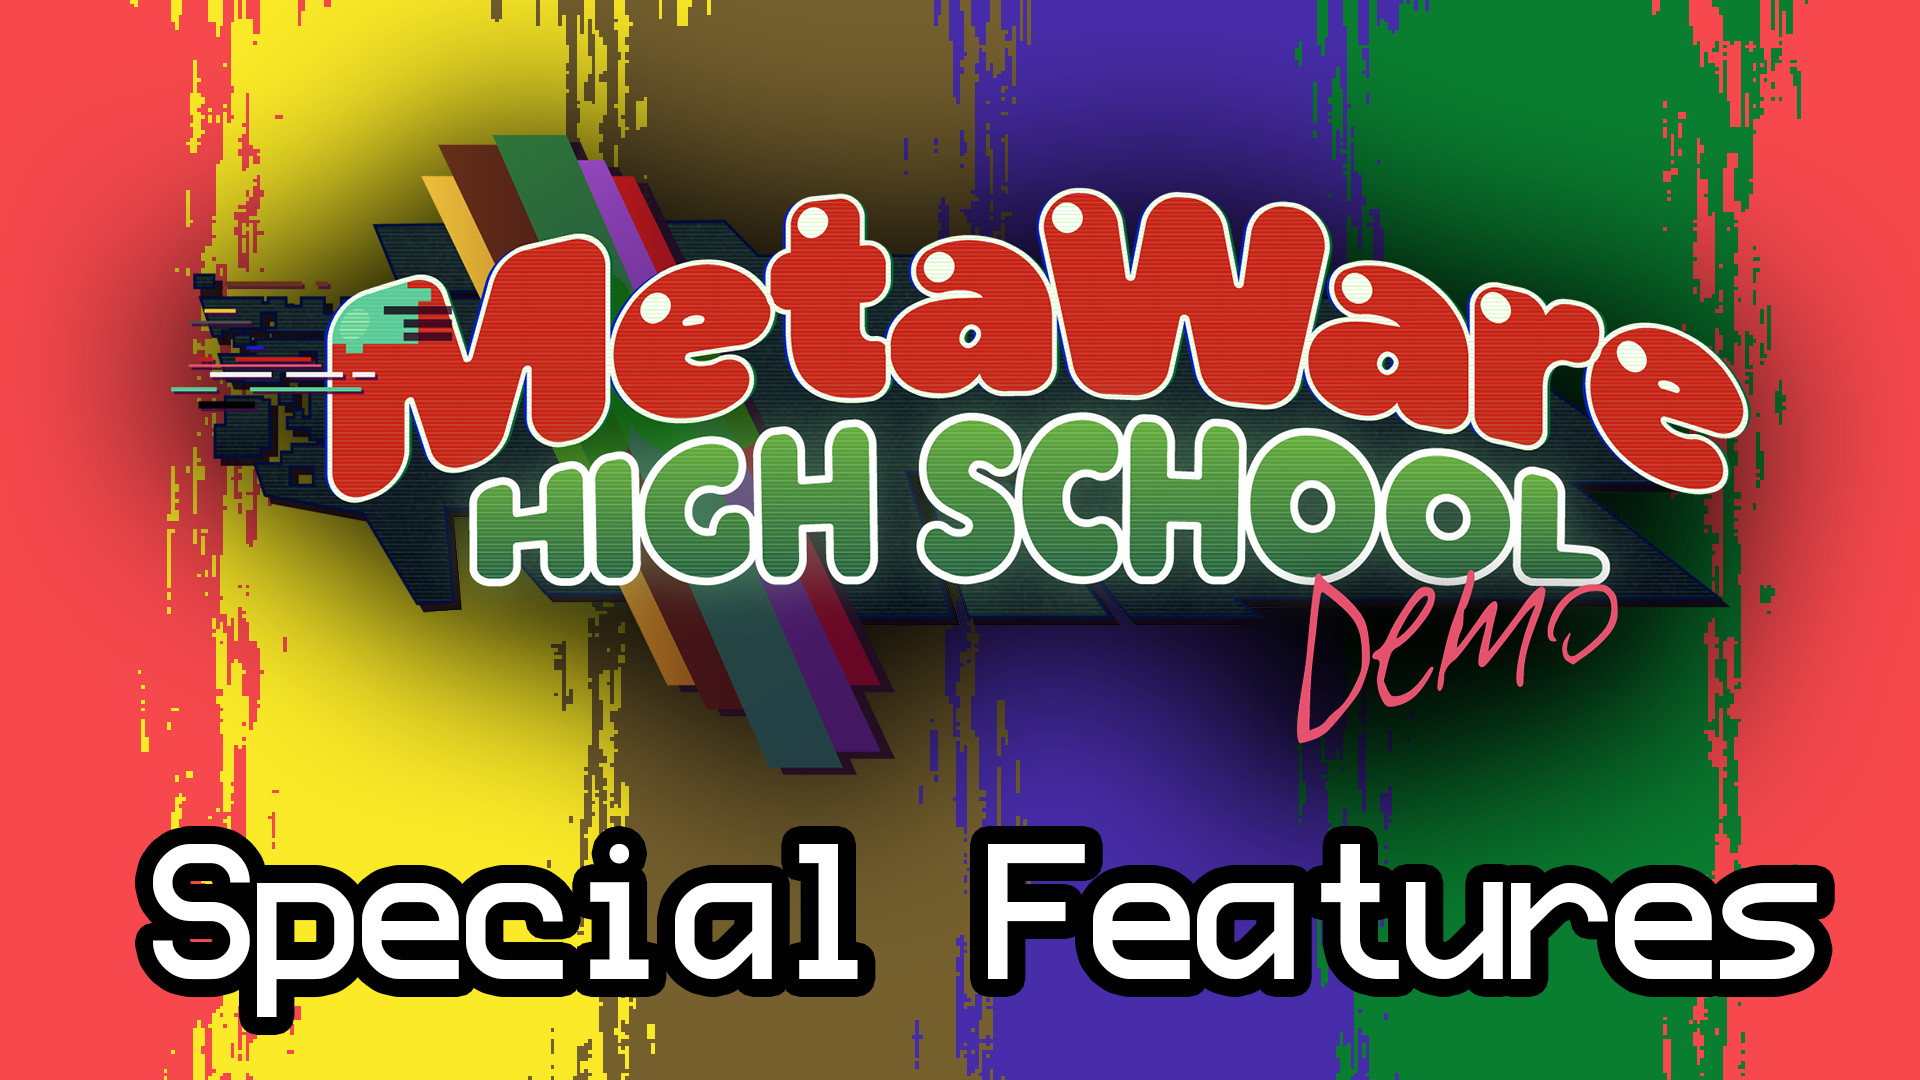 MetaWare High School (Demo) Special Features screenshot